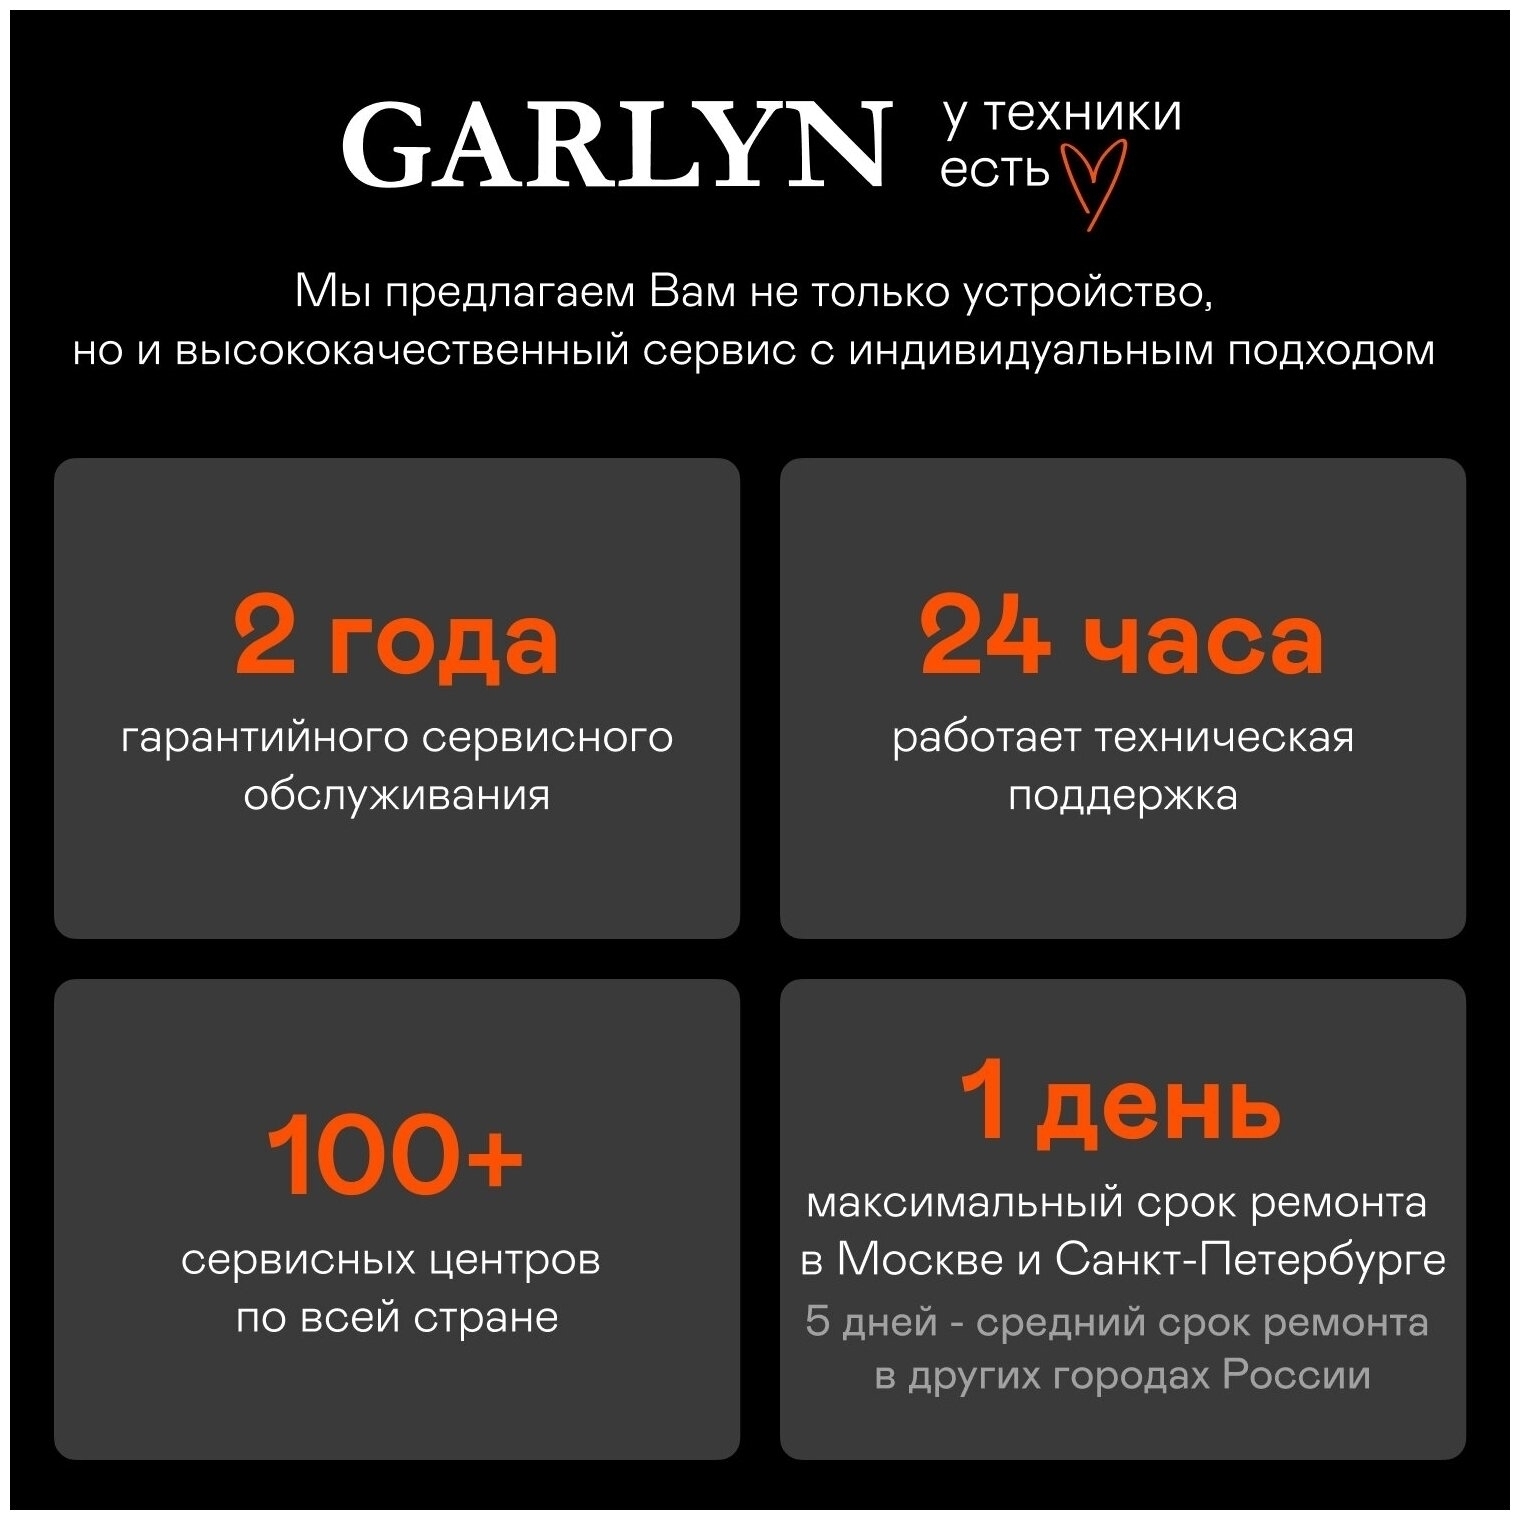 Garlyn gl 400 купить. Garlyn gl-400 Pro. Garlyn gl-300. Garlyn PM-1300. Пылесос Garlyn.